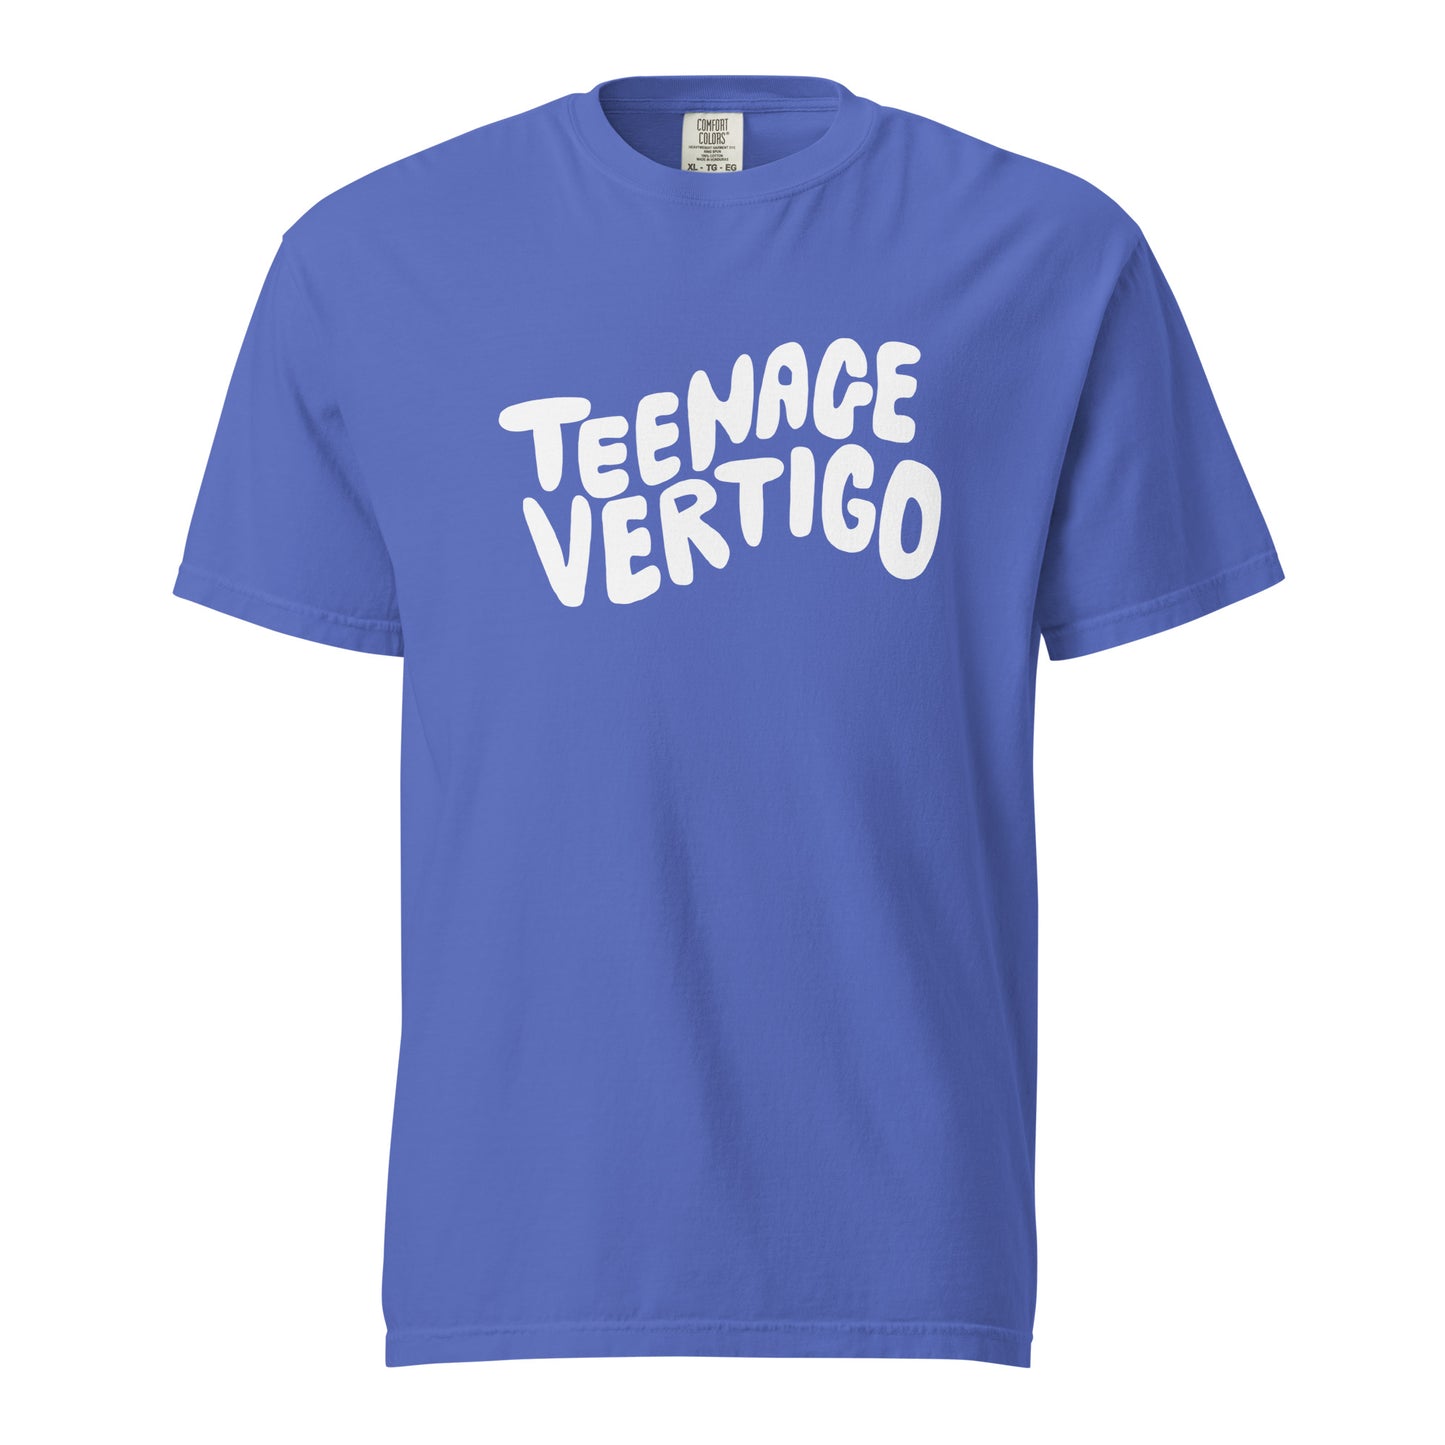 Teenage Vertigo Unisex Heavyweight Tee